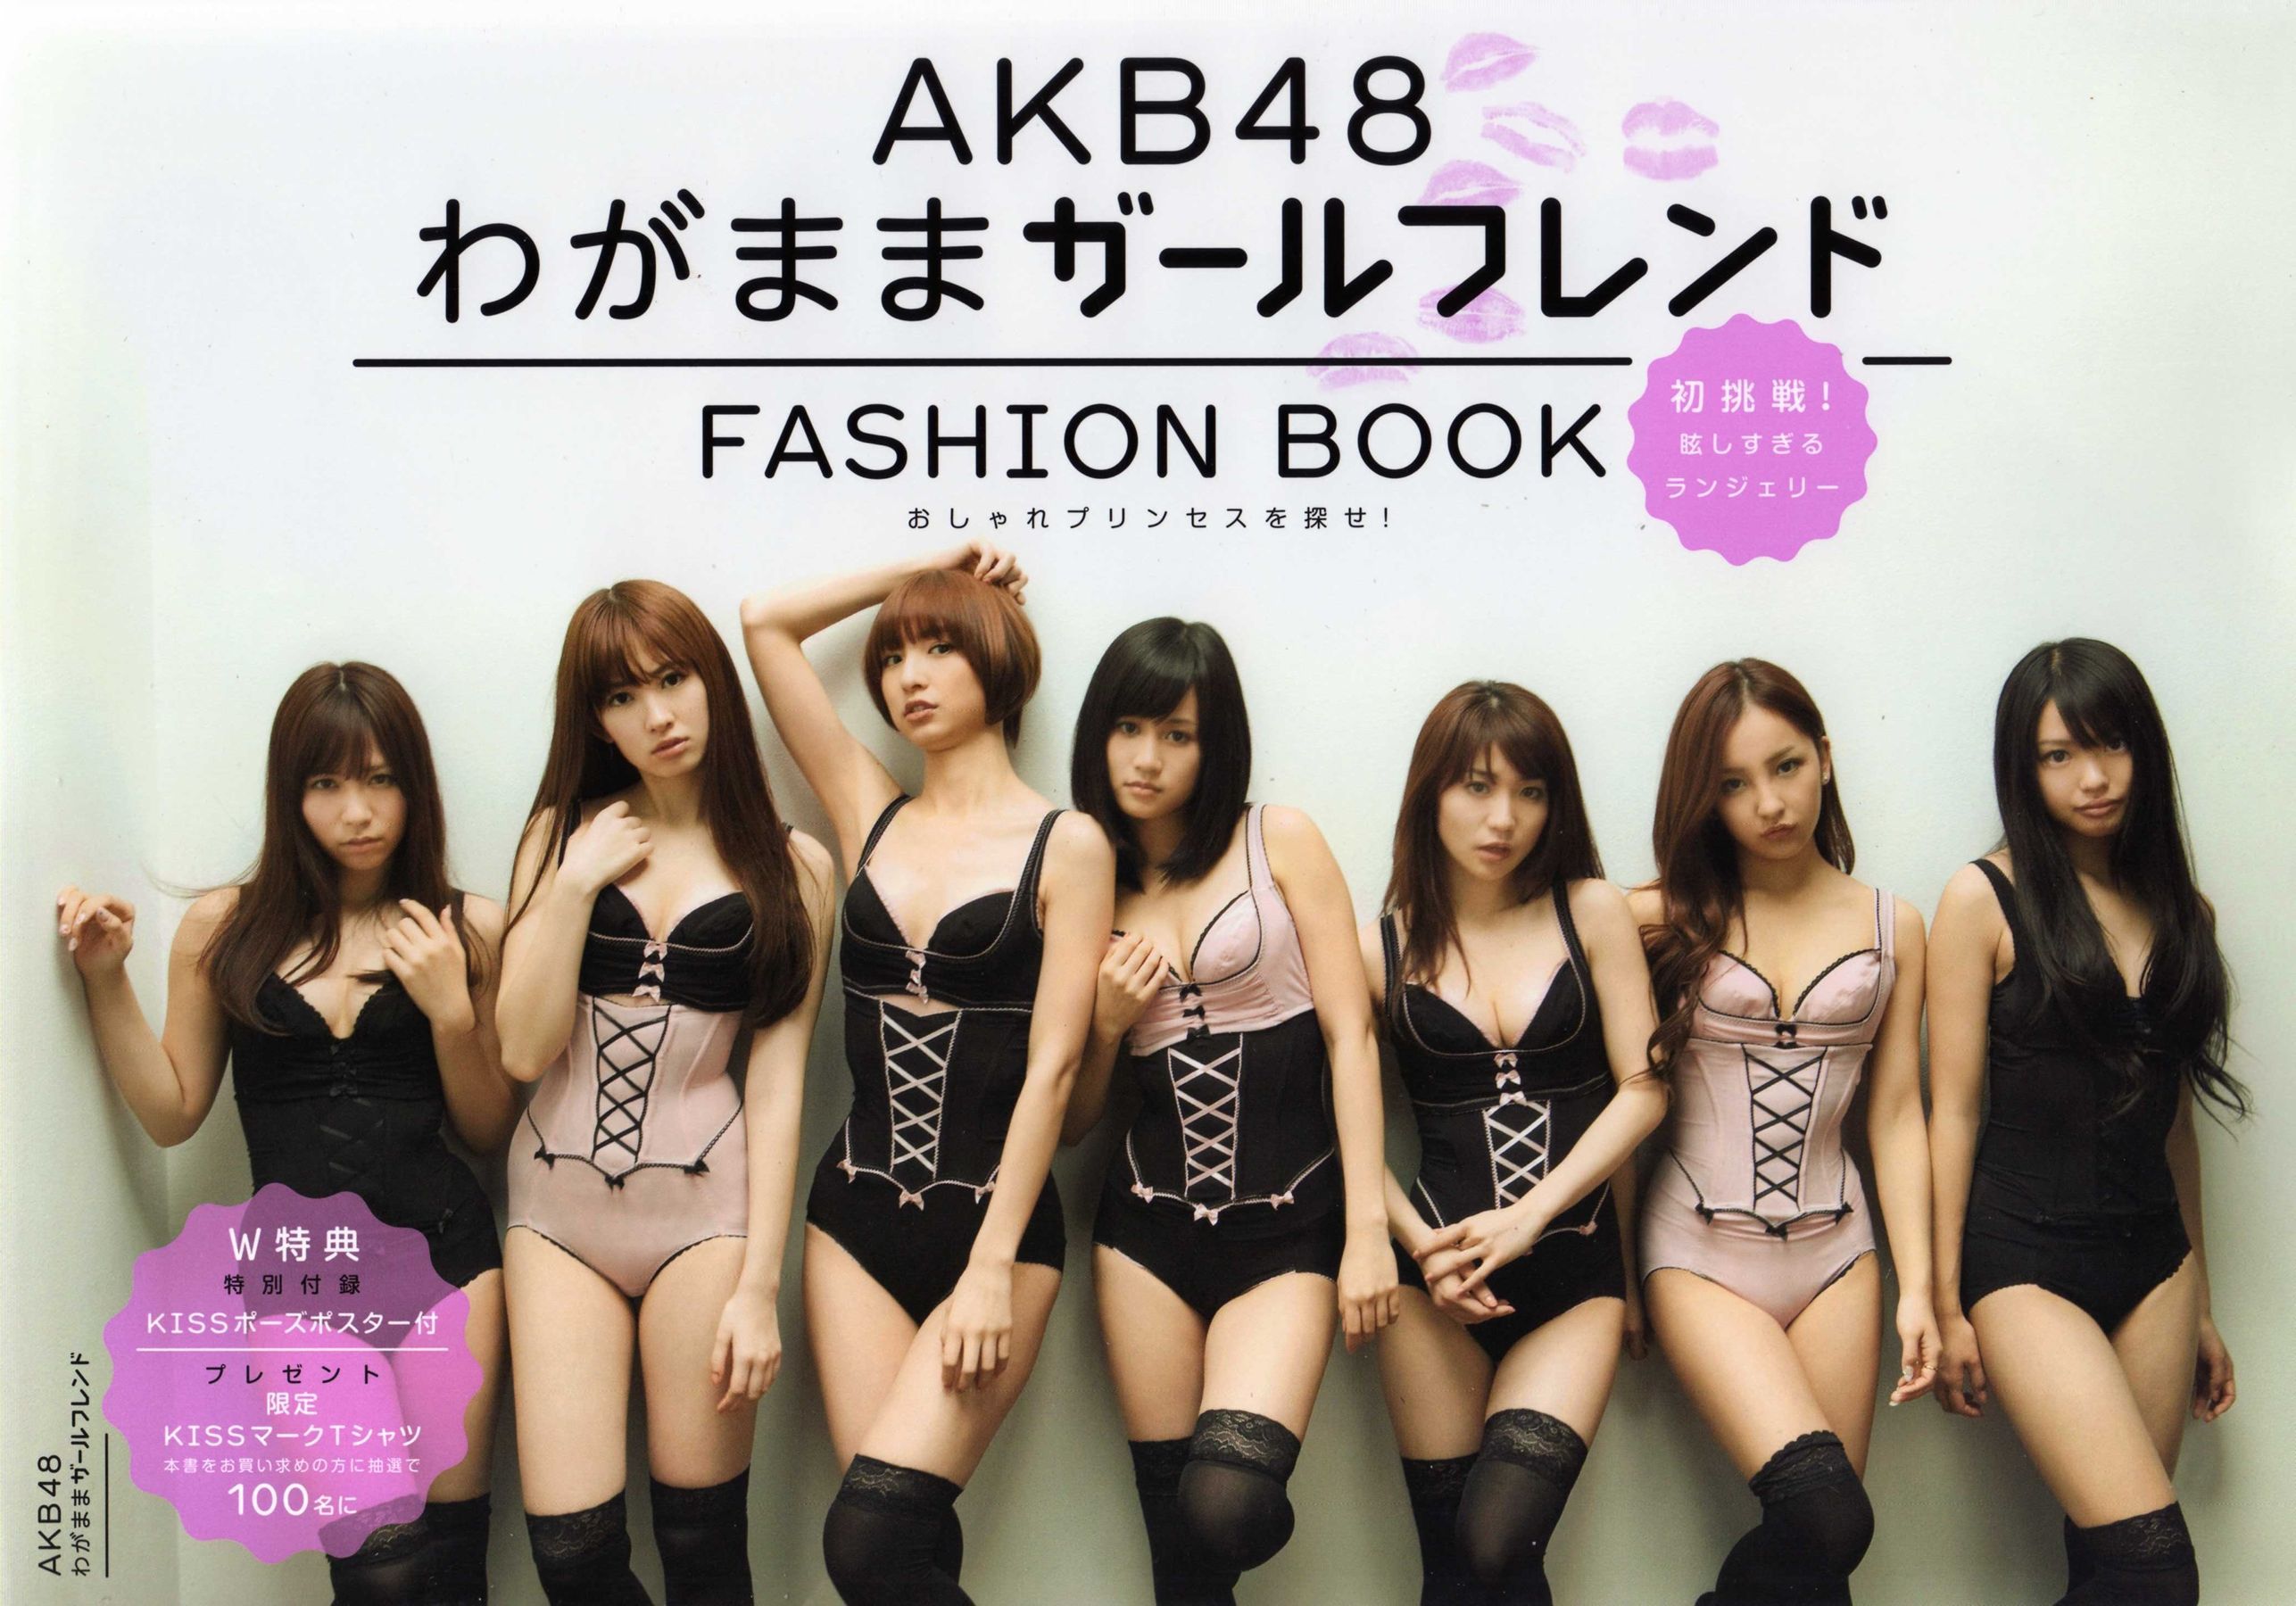 日本AKB48女子组合《2013 Fashion Book内衣秀》-喵次元